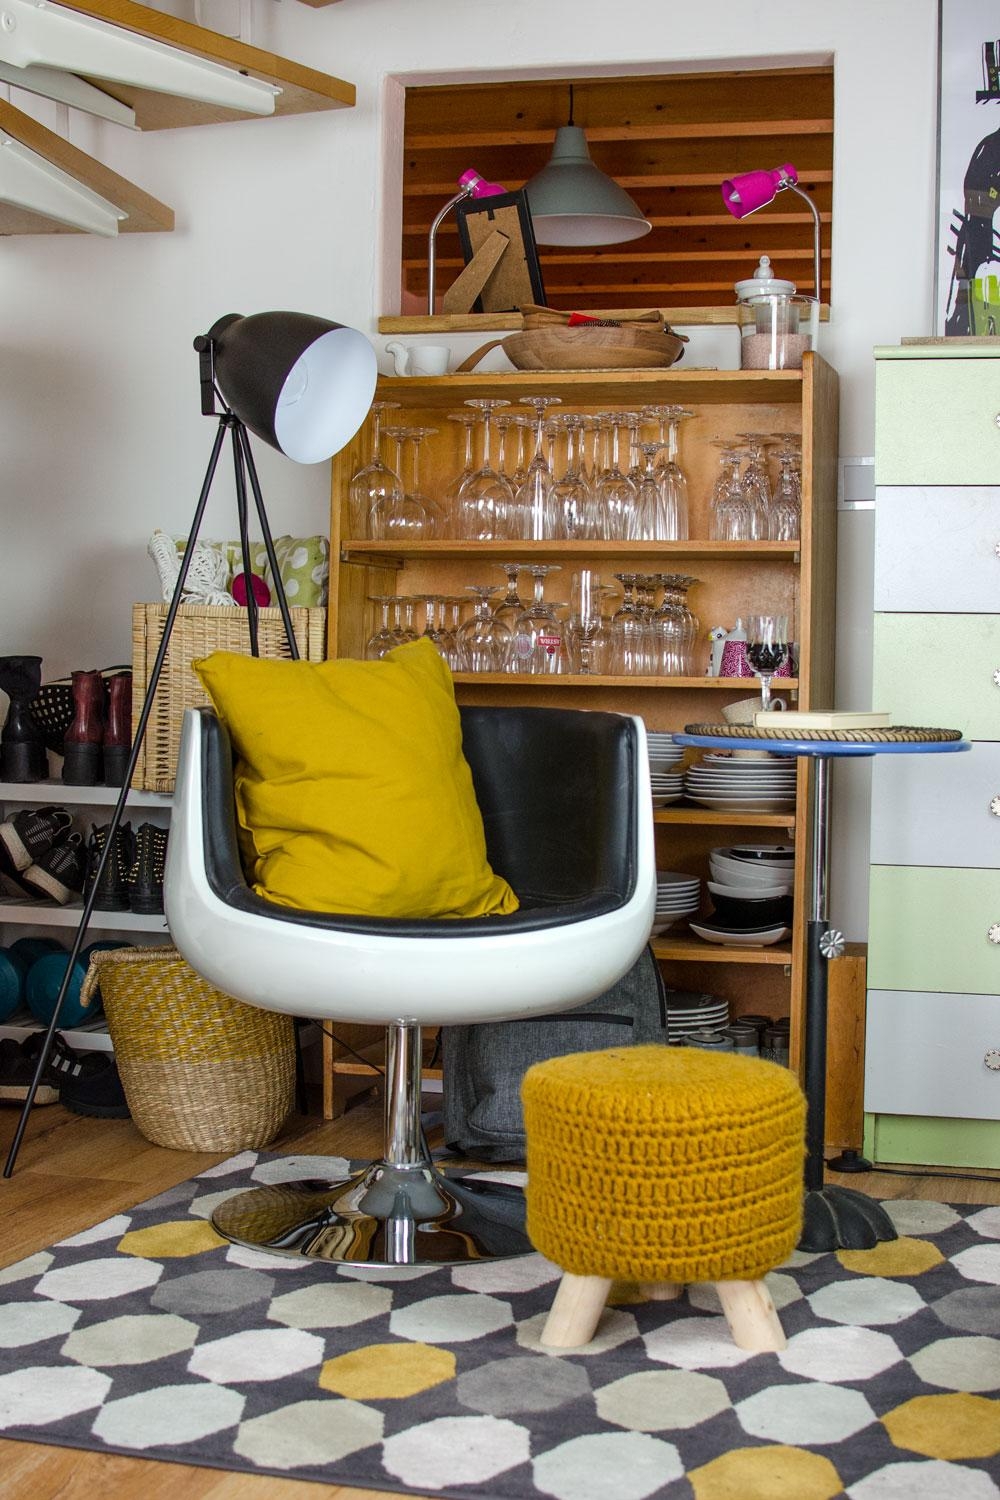 Mein Lounge Chair 
#livingroom #wohnzimmer #loungechair #möbeldesign #midcentury #19060s #boho #design #hocker #lampe